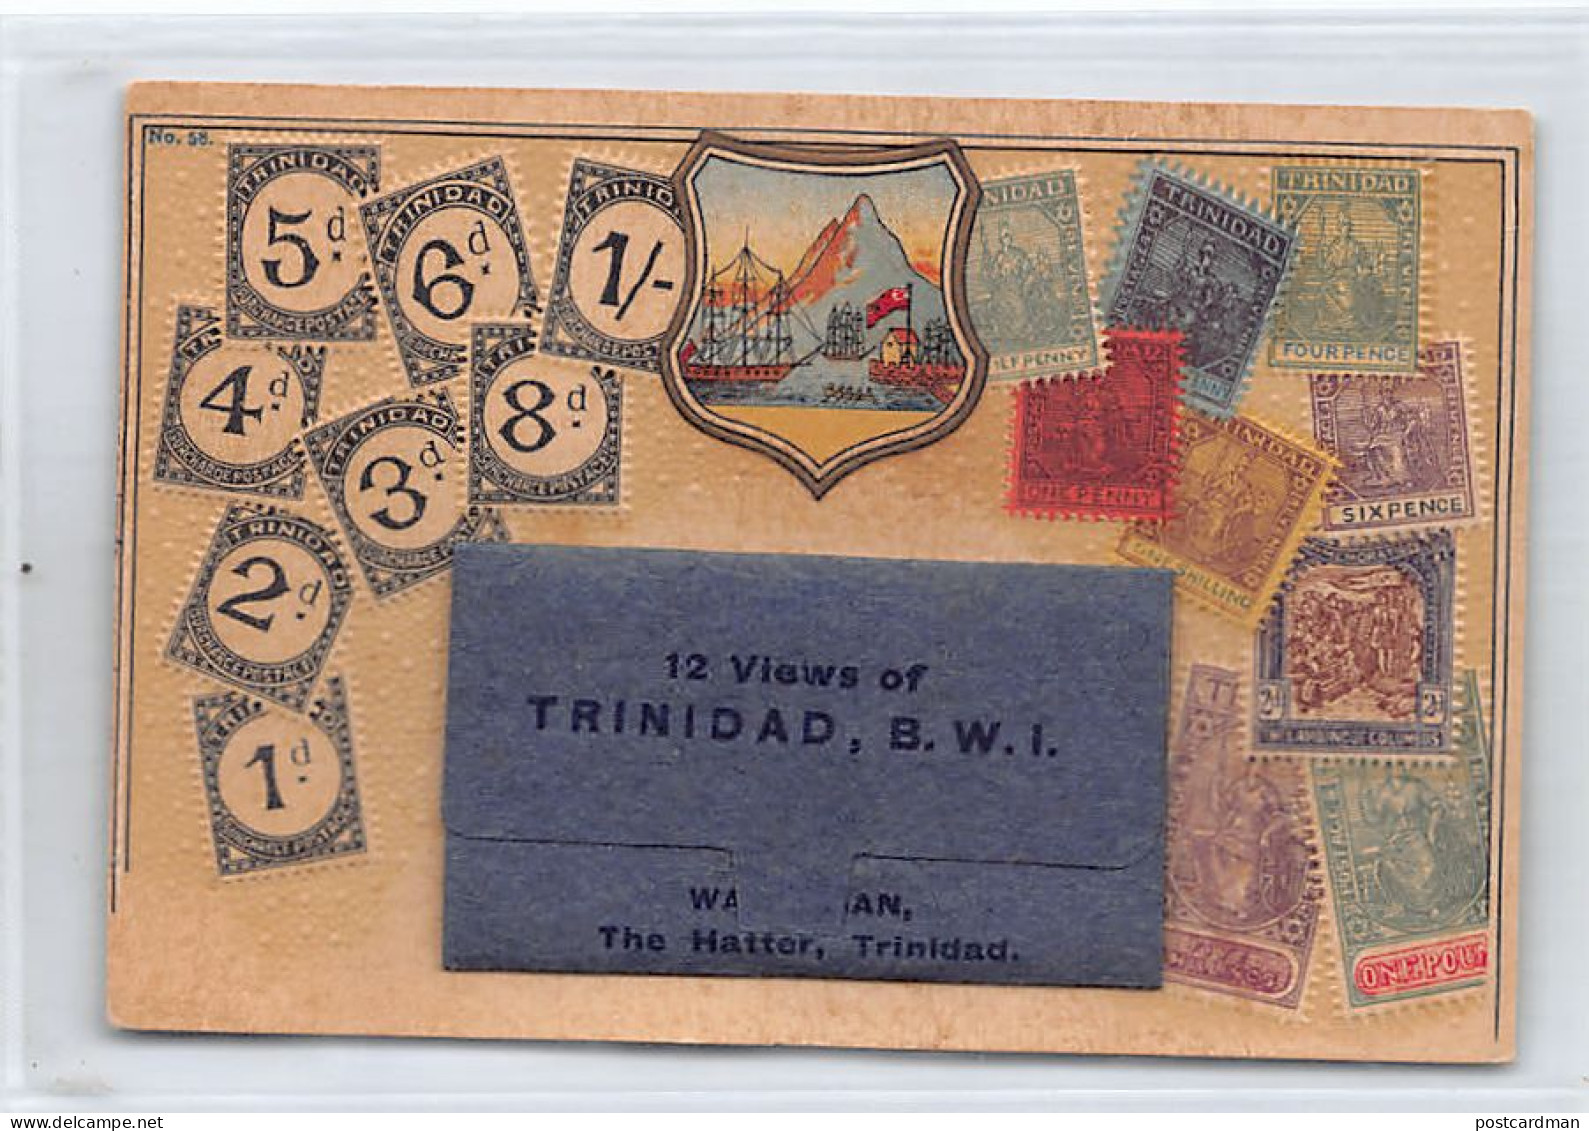 Trinidad - SACHET POSTCARD - Stamps Of Trinidad - Publ. Unknown  - Trinidad